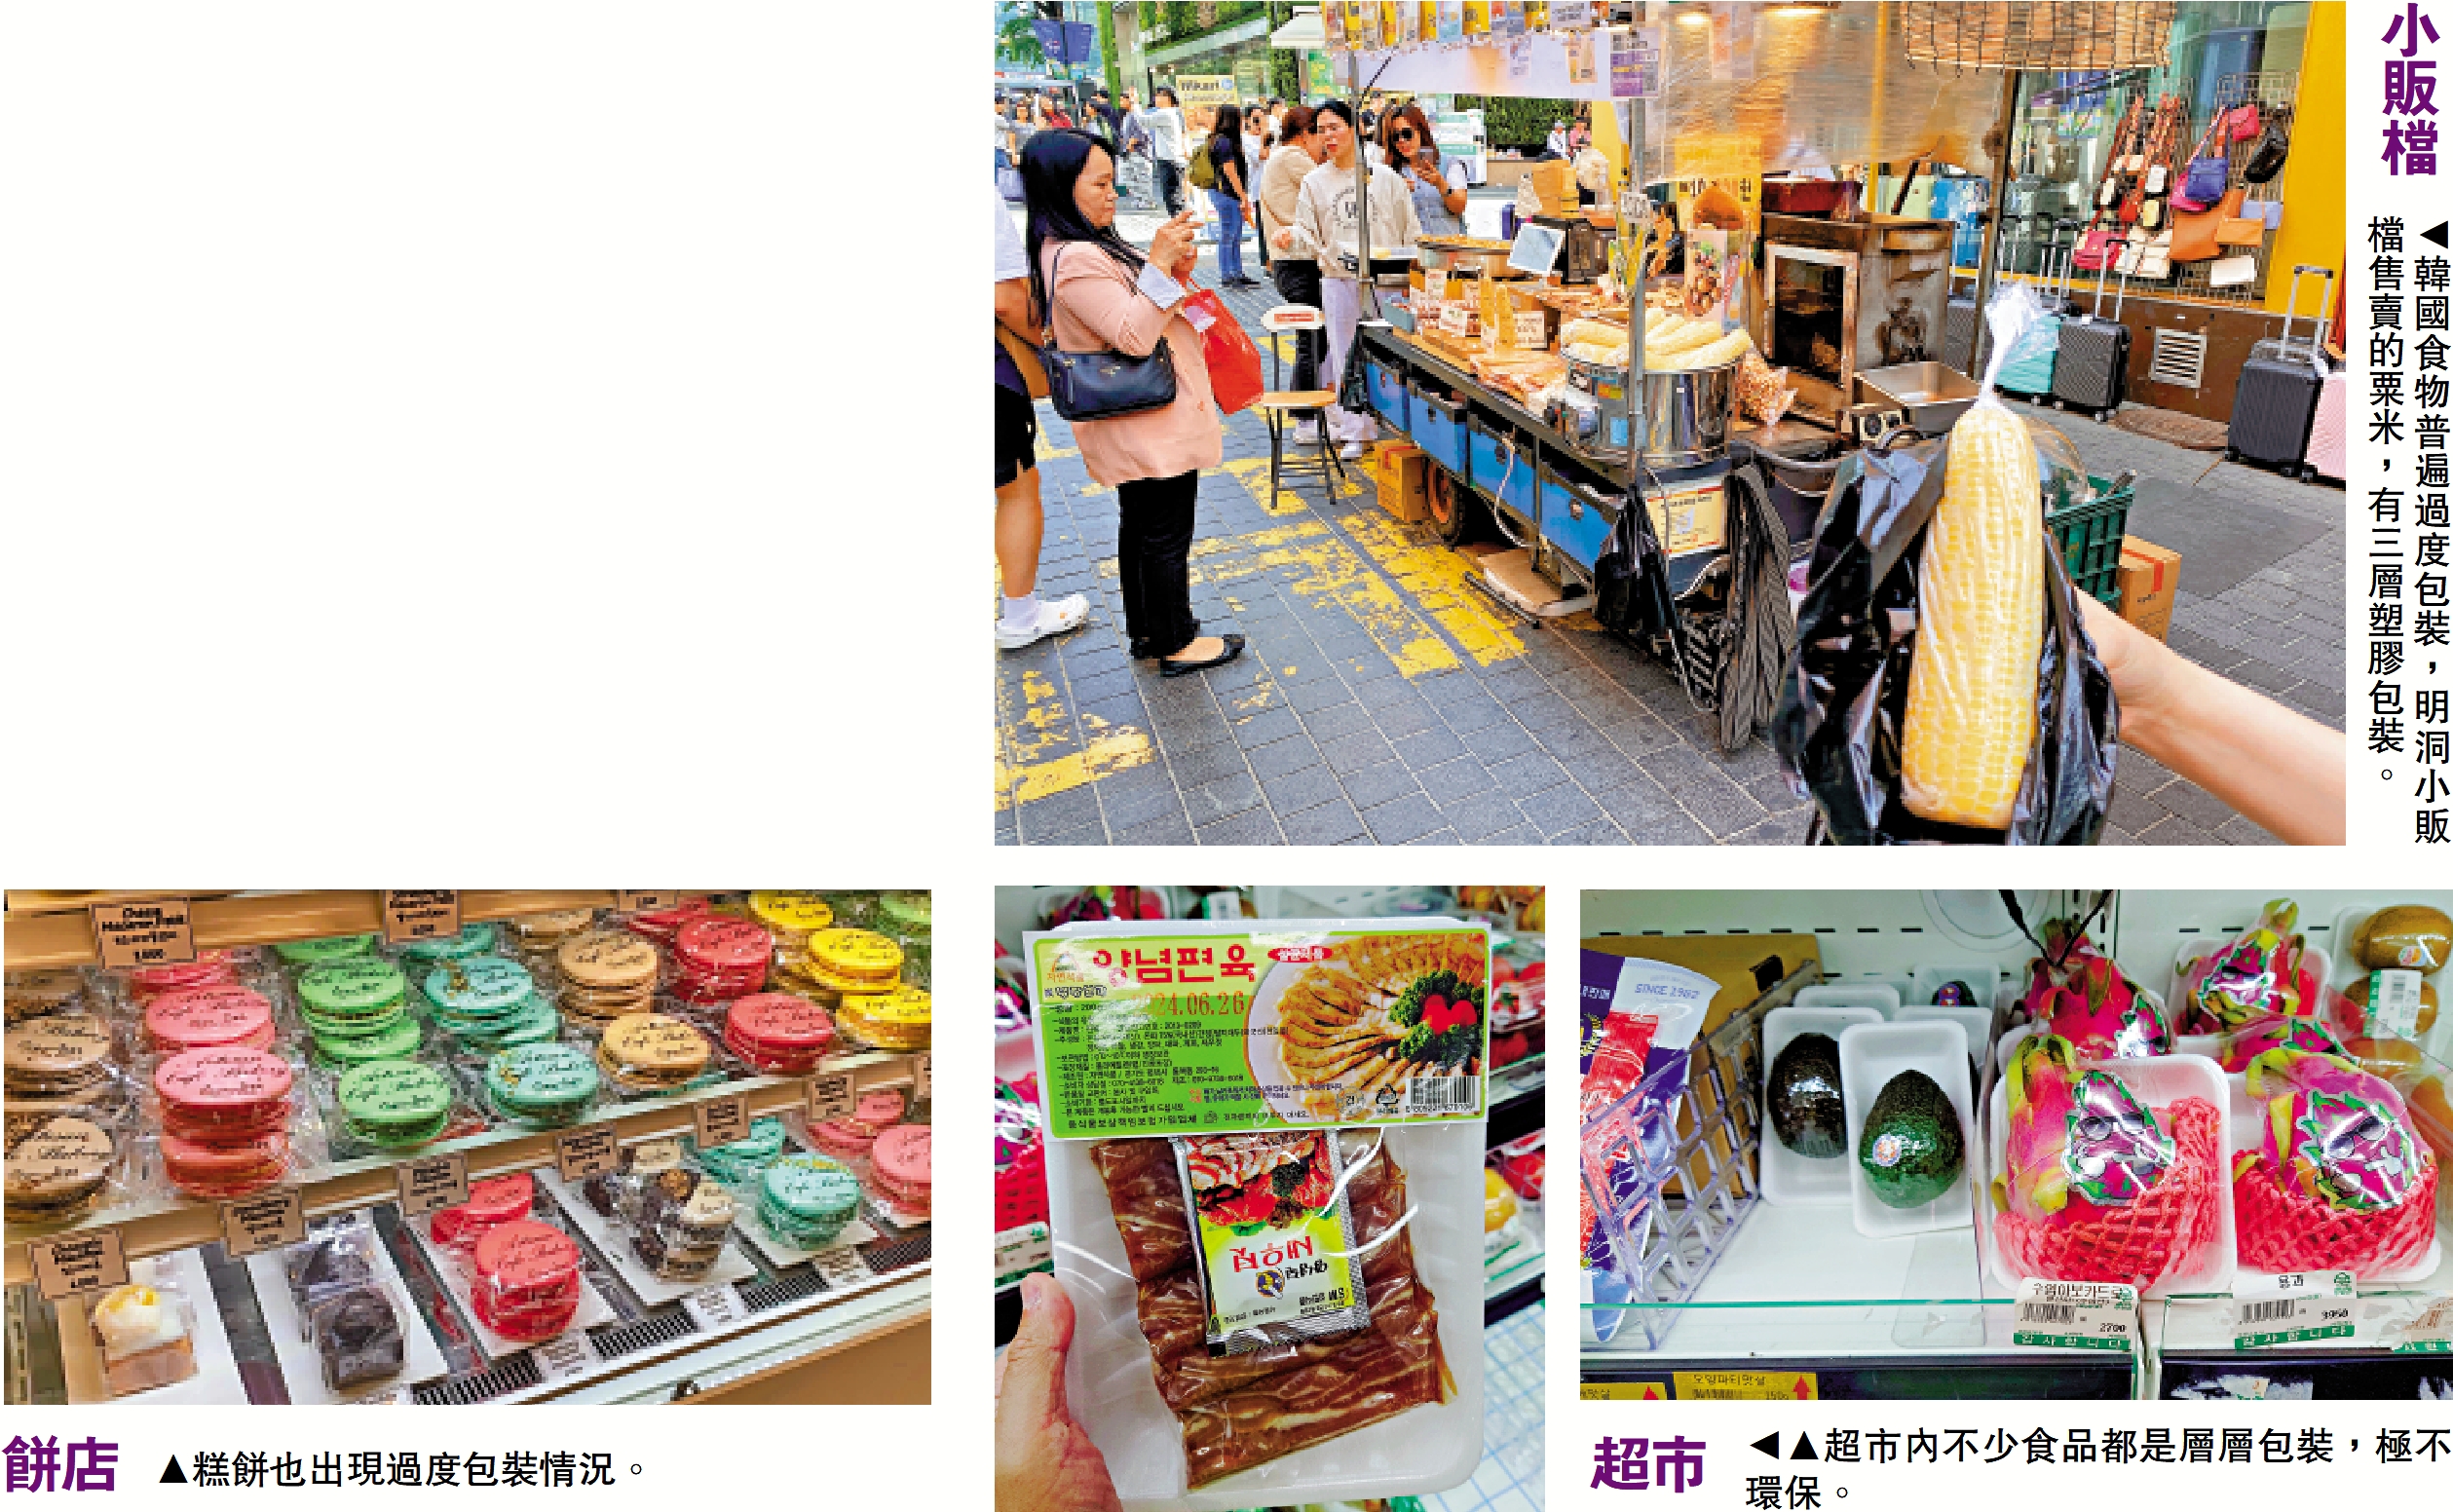 　　上圖：韓國食物普遍過度包裝，明洞小販檔售賣的粟米，有三層塑膠包裝。下圖左：糕餅也出現過度包裝情況。下圖右中：超市內不少食品都是層層包裝，極不環保。